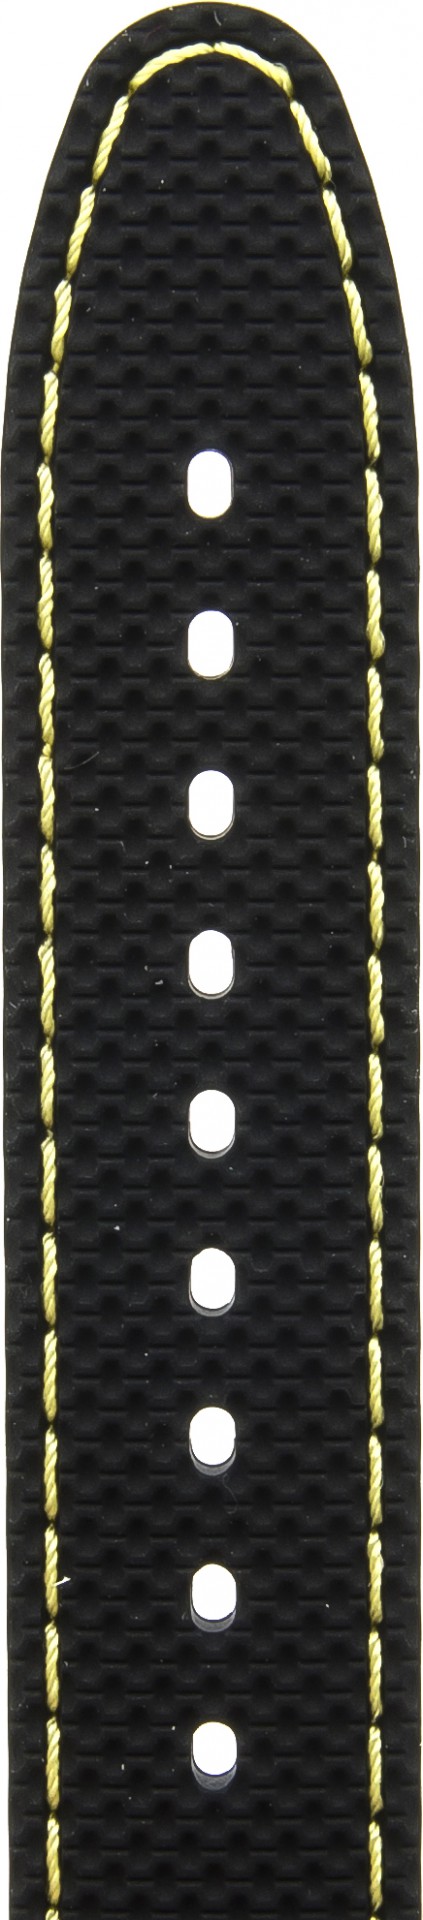   Watch Band Reifen-Muster Dornschließe - Silikon - schwarz with gelb stitching 